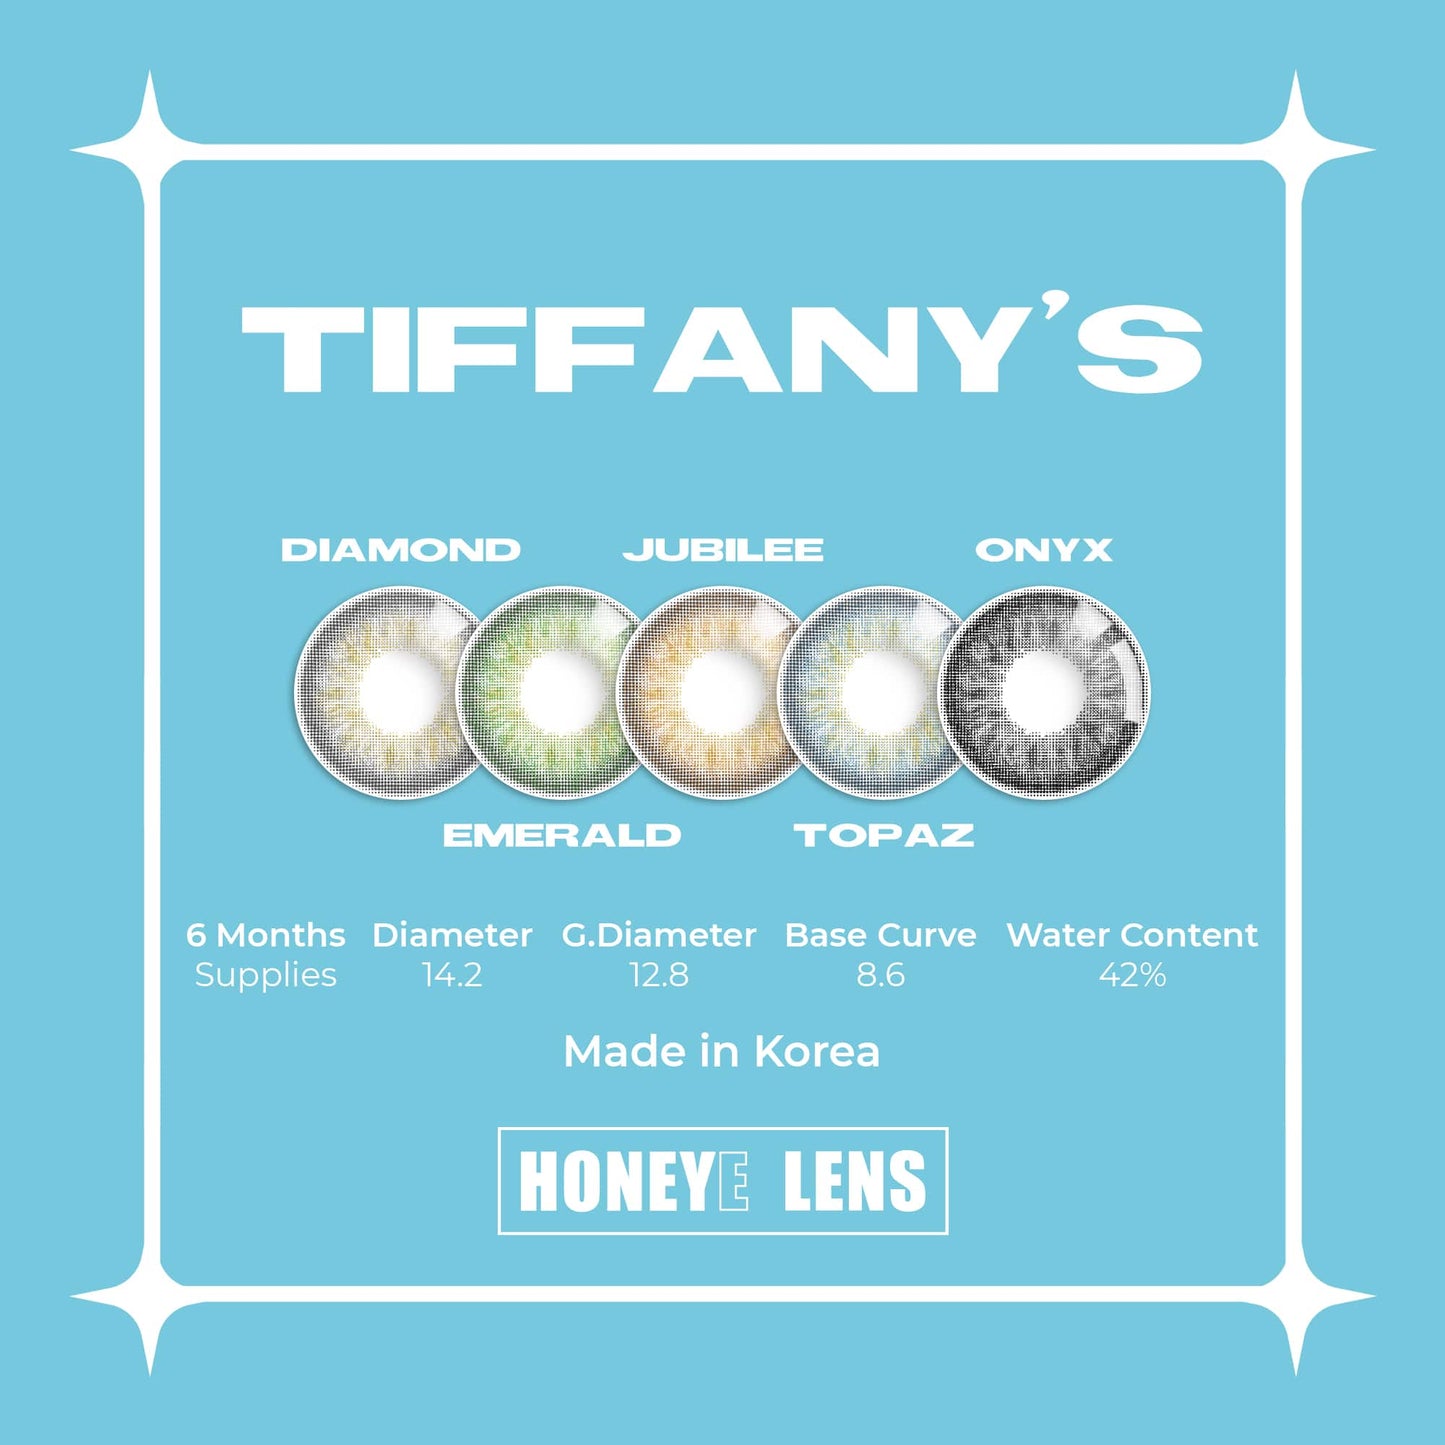 Tiffany's Diamond